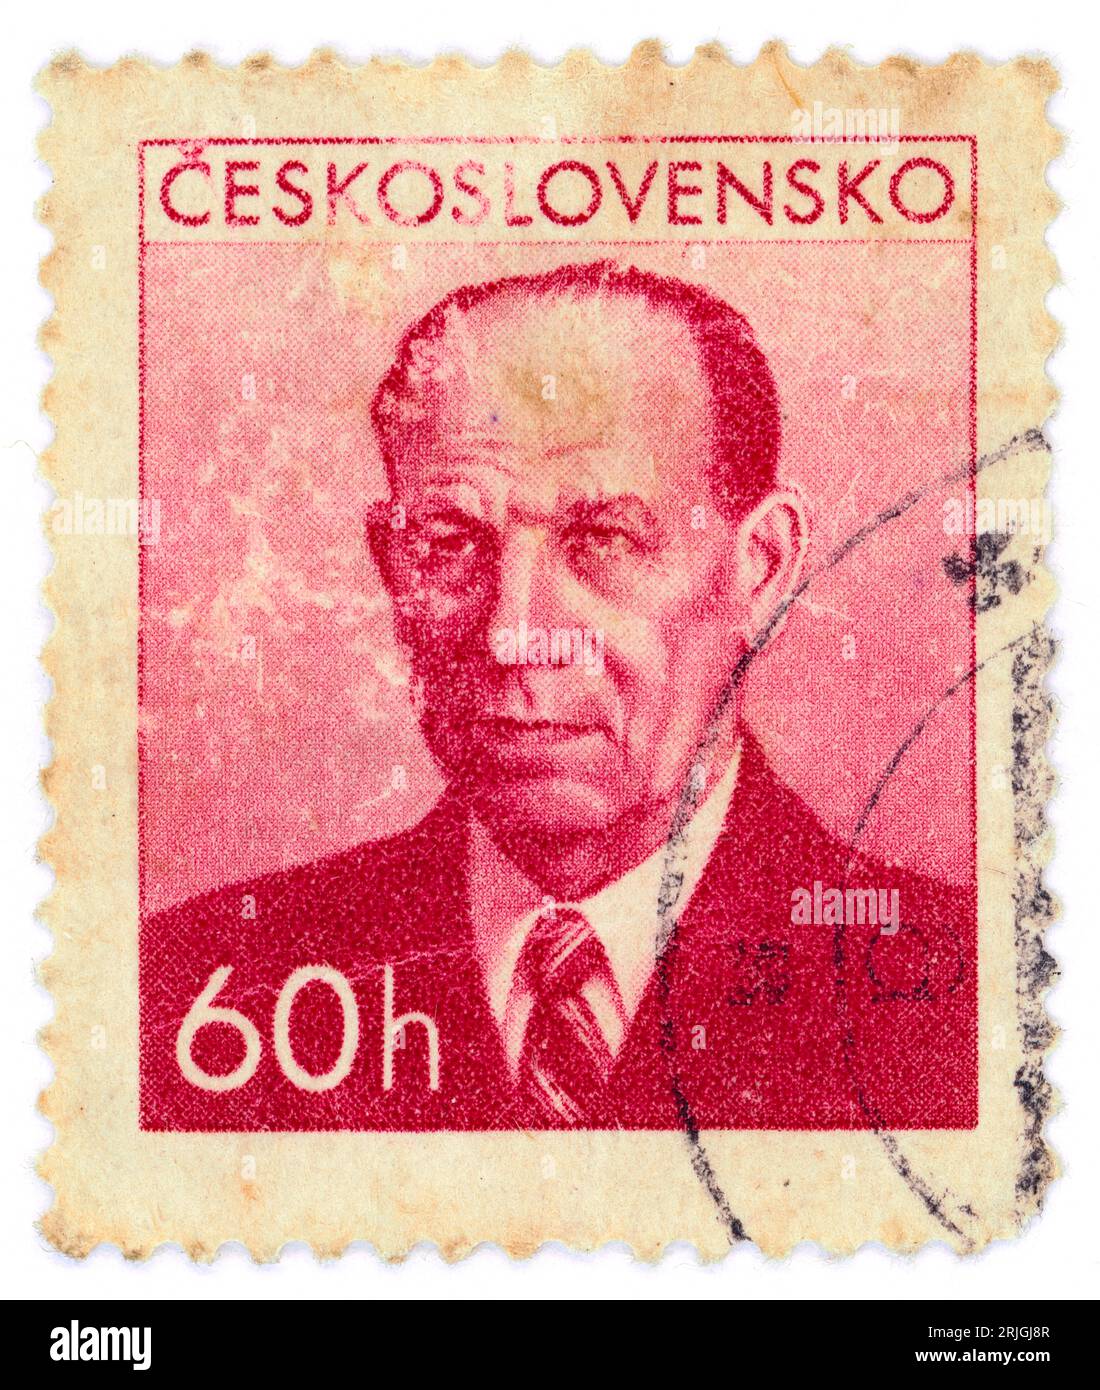 Antonín Zápotocký (1884 – 1957). Francobollo emesso in Cecoslovacchia nel 1953. Antonín Zápotocký è stato un politico e statista ceco che ha servito come primo ministro della Cecoslovacchia dal 1948 al 1953 e presidente della Cecoslovacchia dal 1953 al 1957. Foto Stock